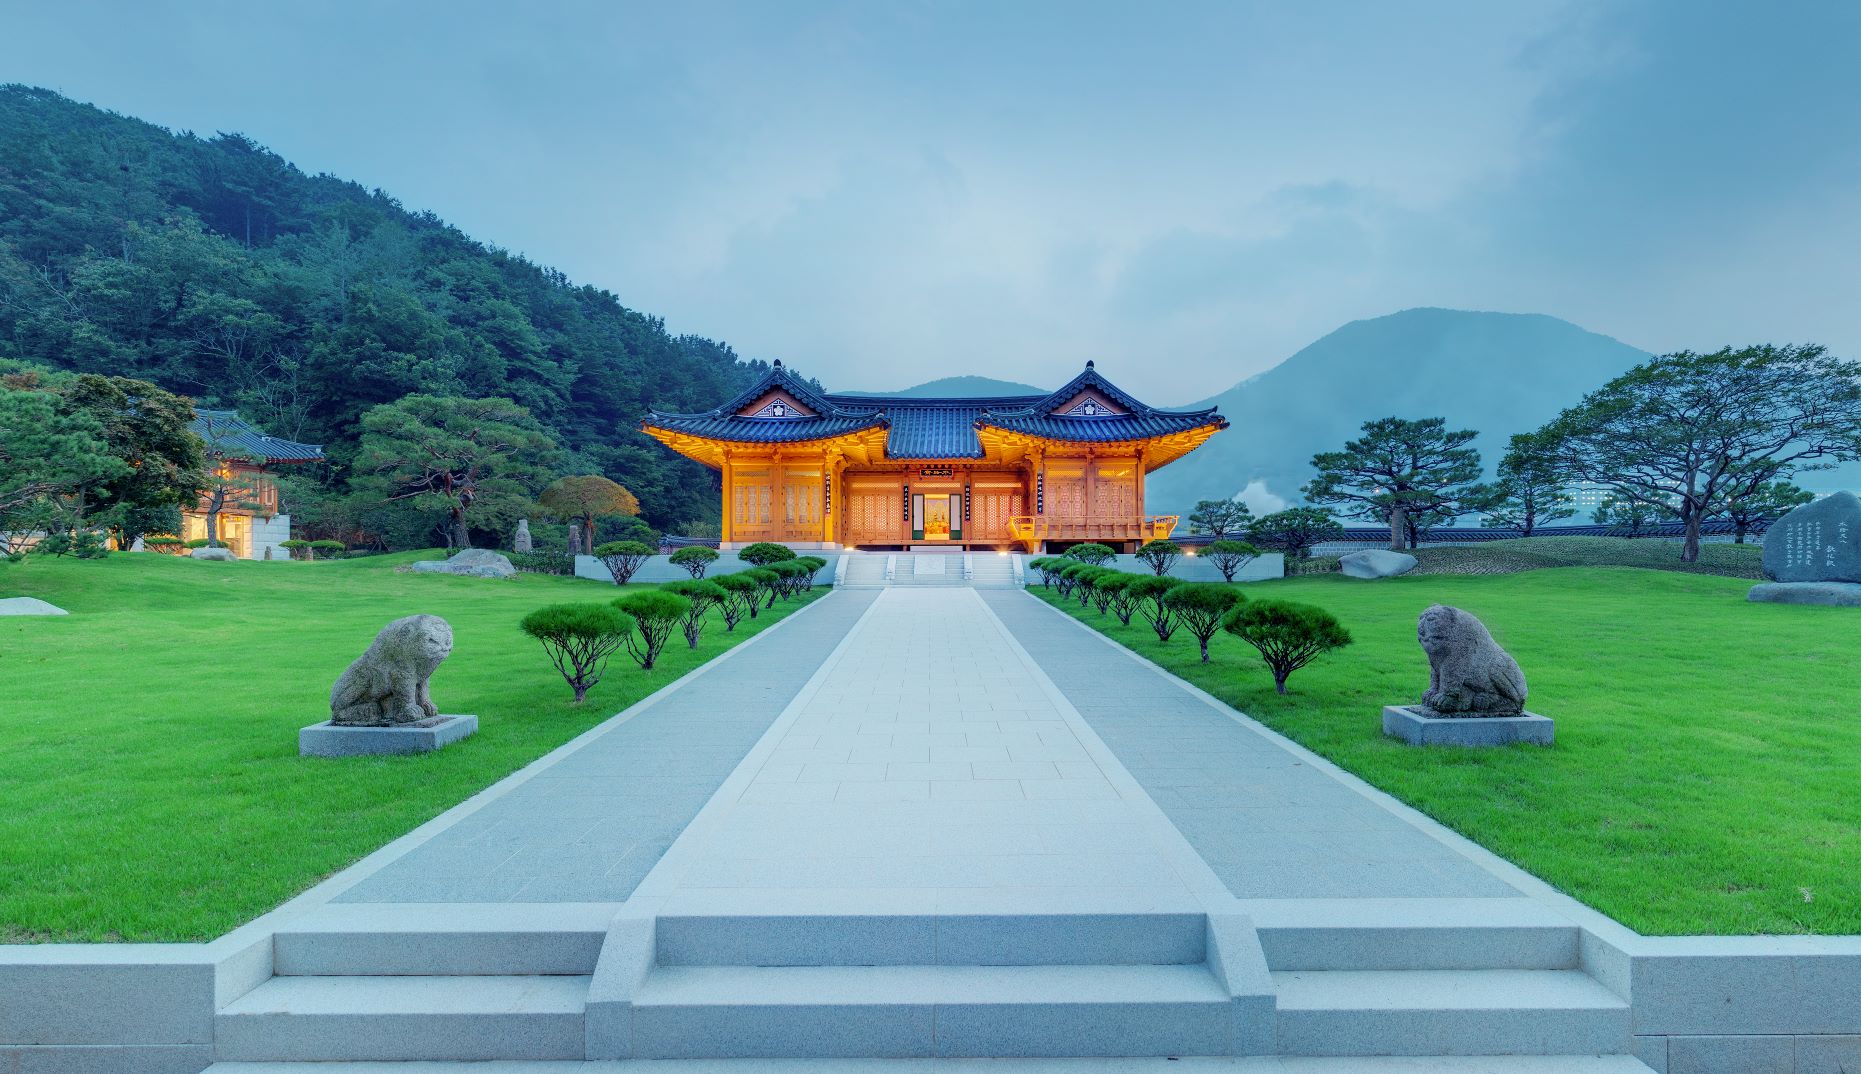 한국 궁중 꽃 박물관의 파일 이미지